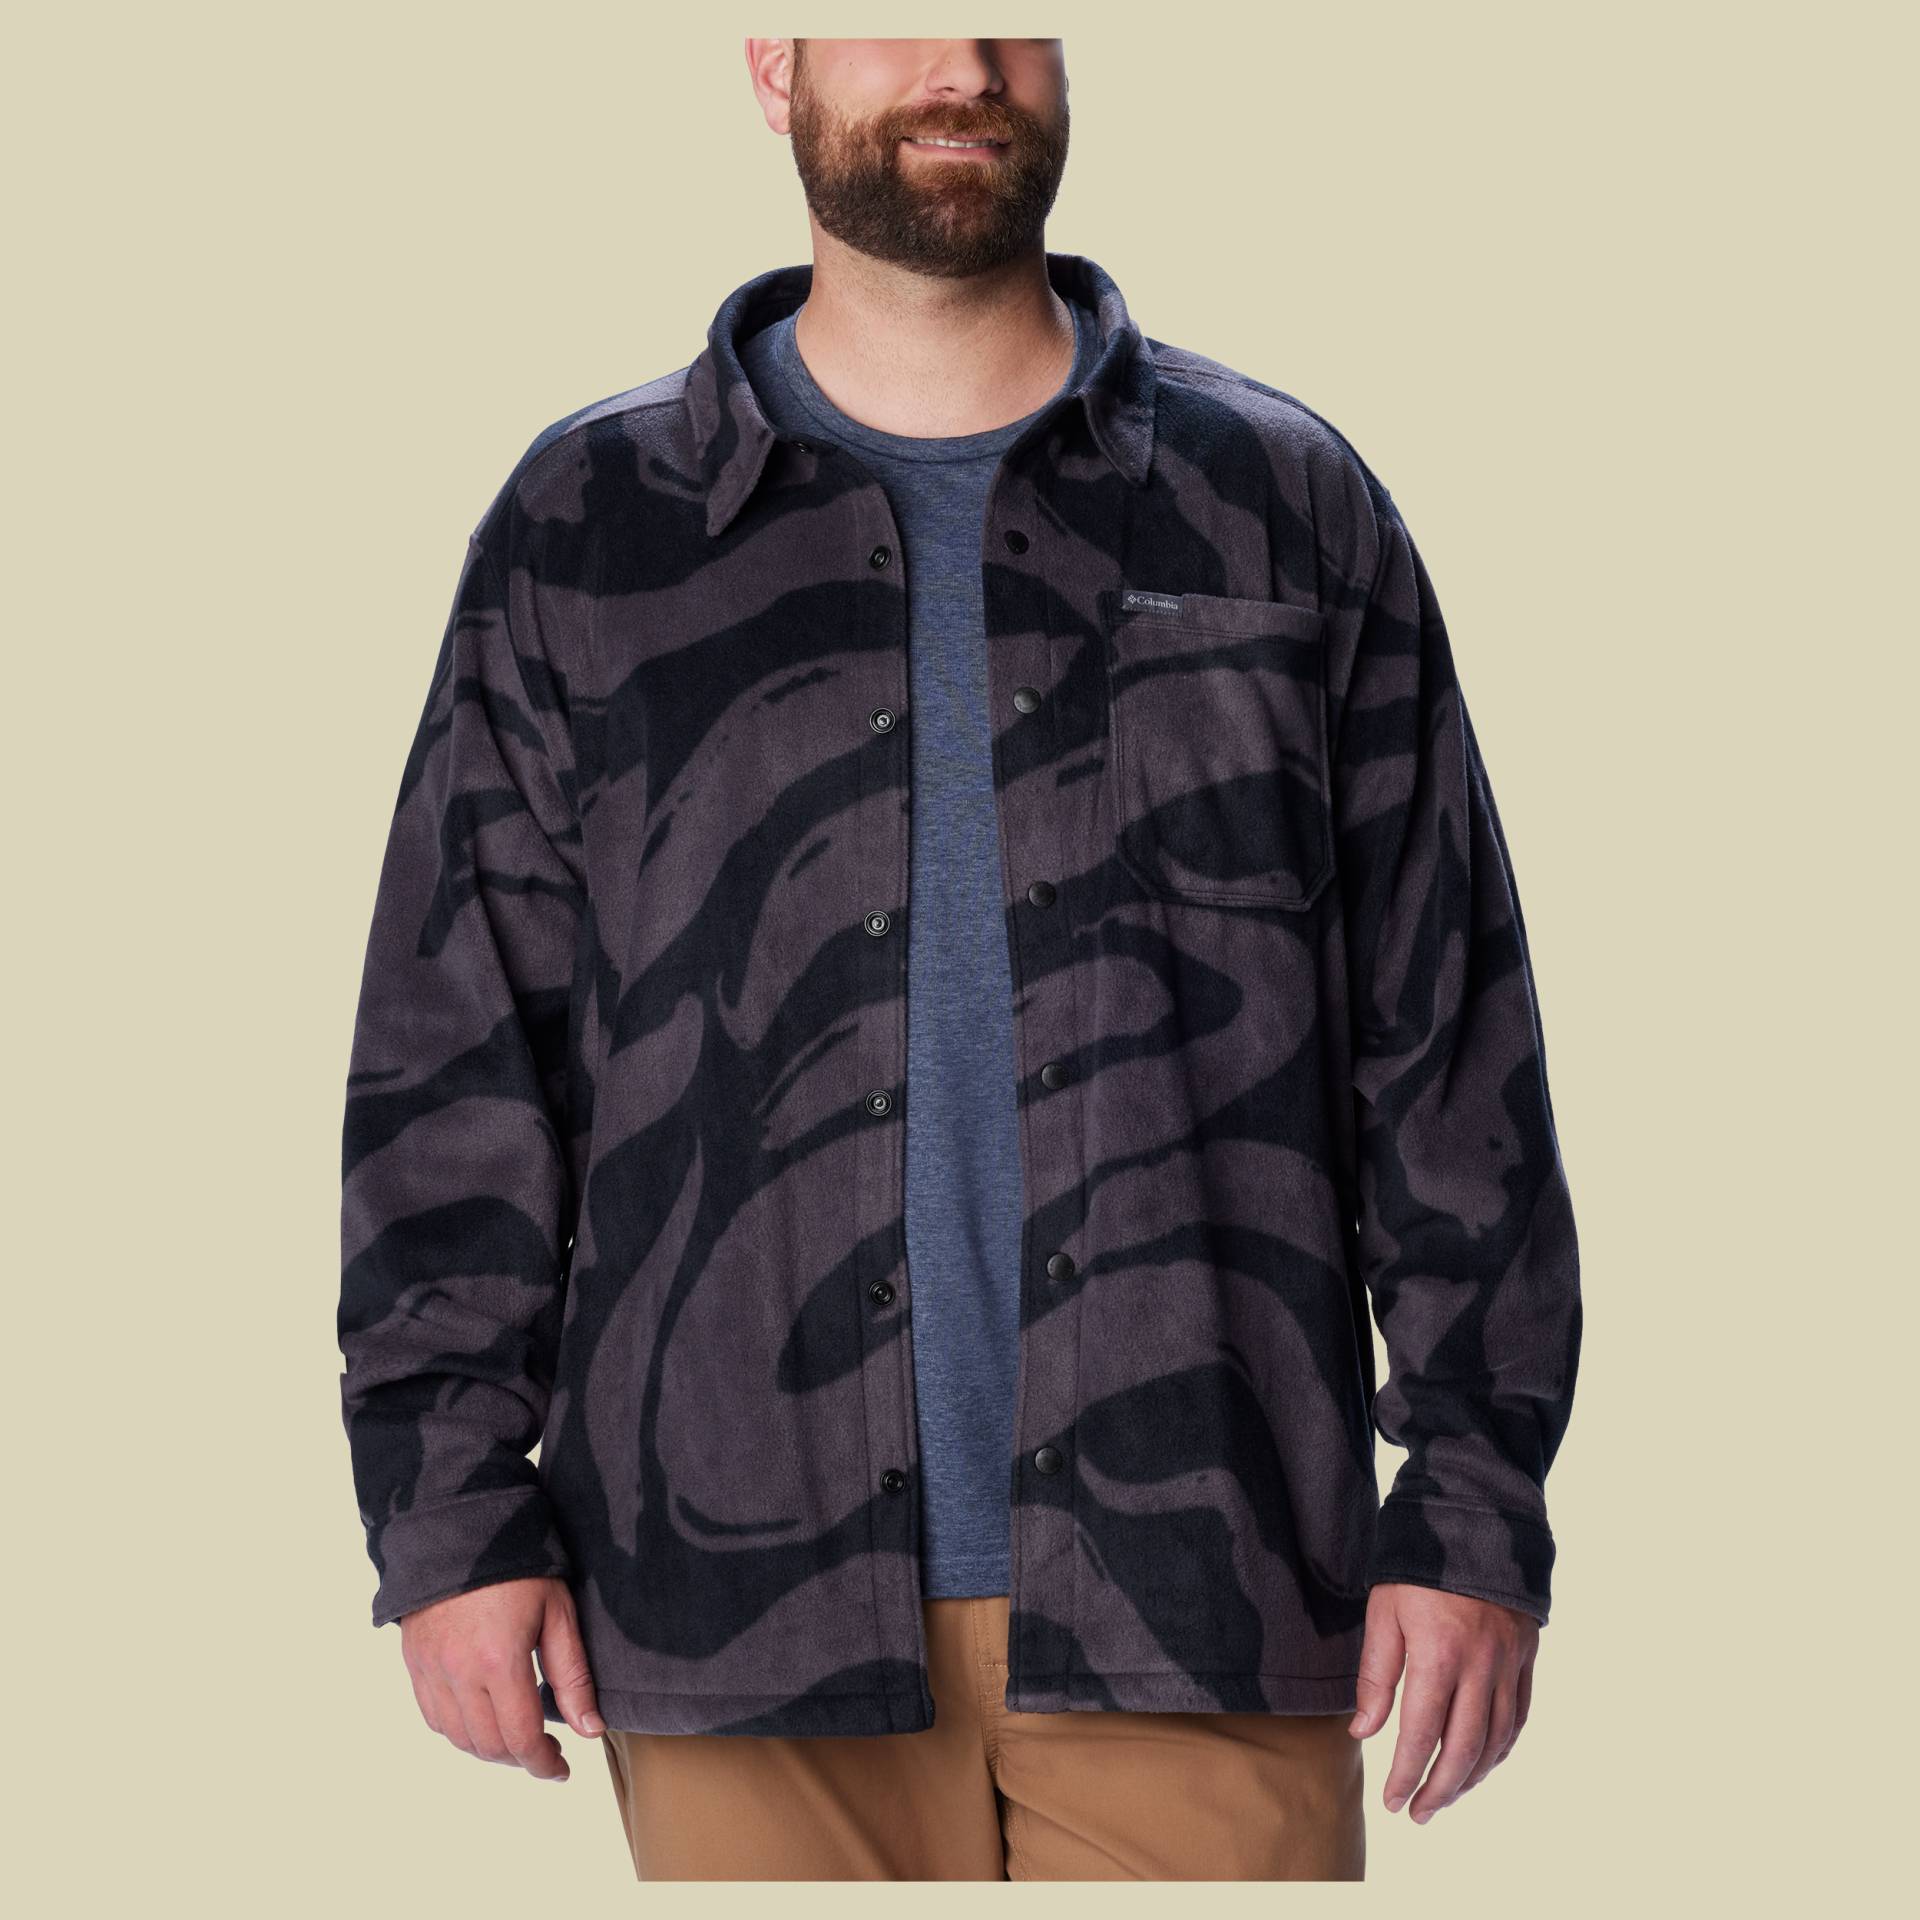 Steens Mountain Printed Jacket Men Größe L  Farbe black snowdrift von Columbia